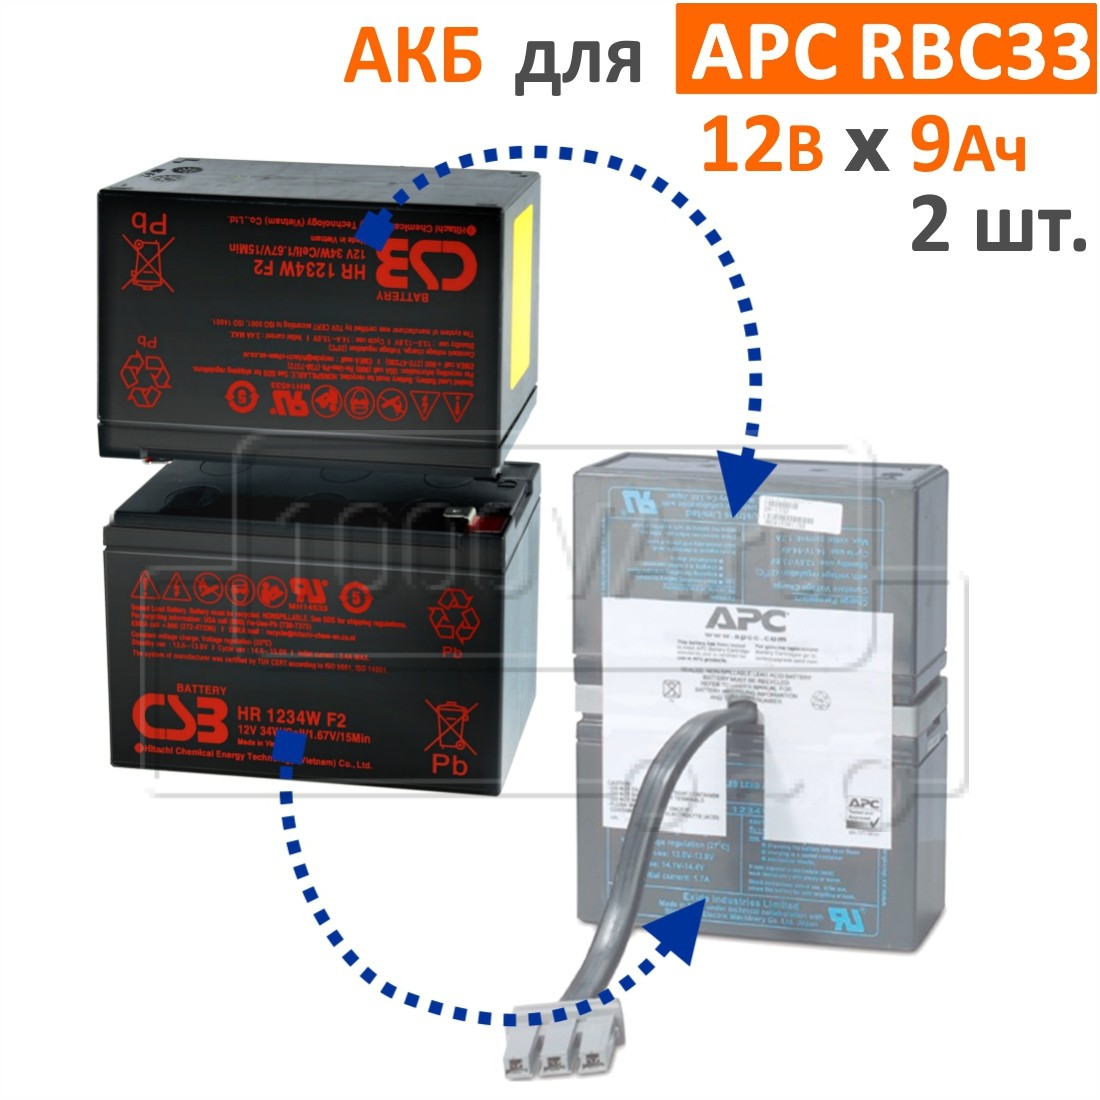 CSB, BB Battery Комплект аккумуляторов для APC RBC33